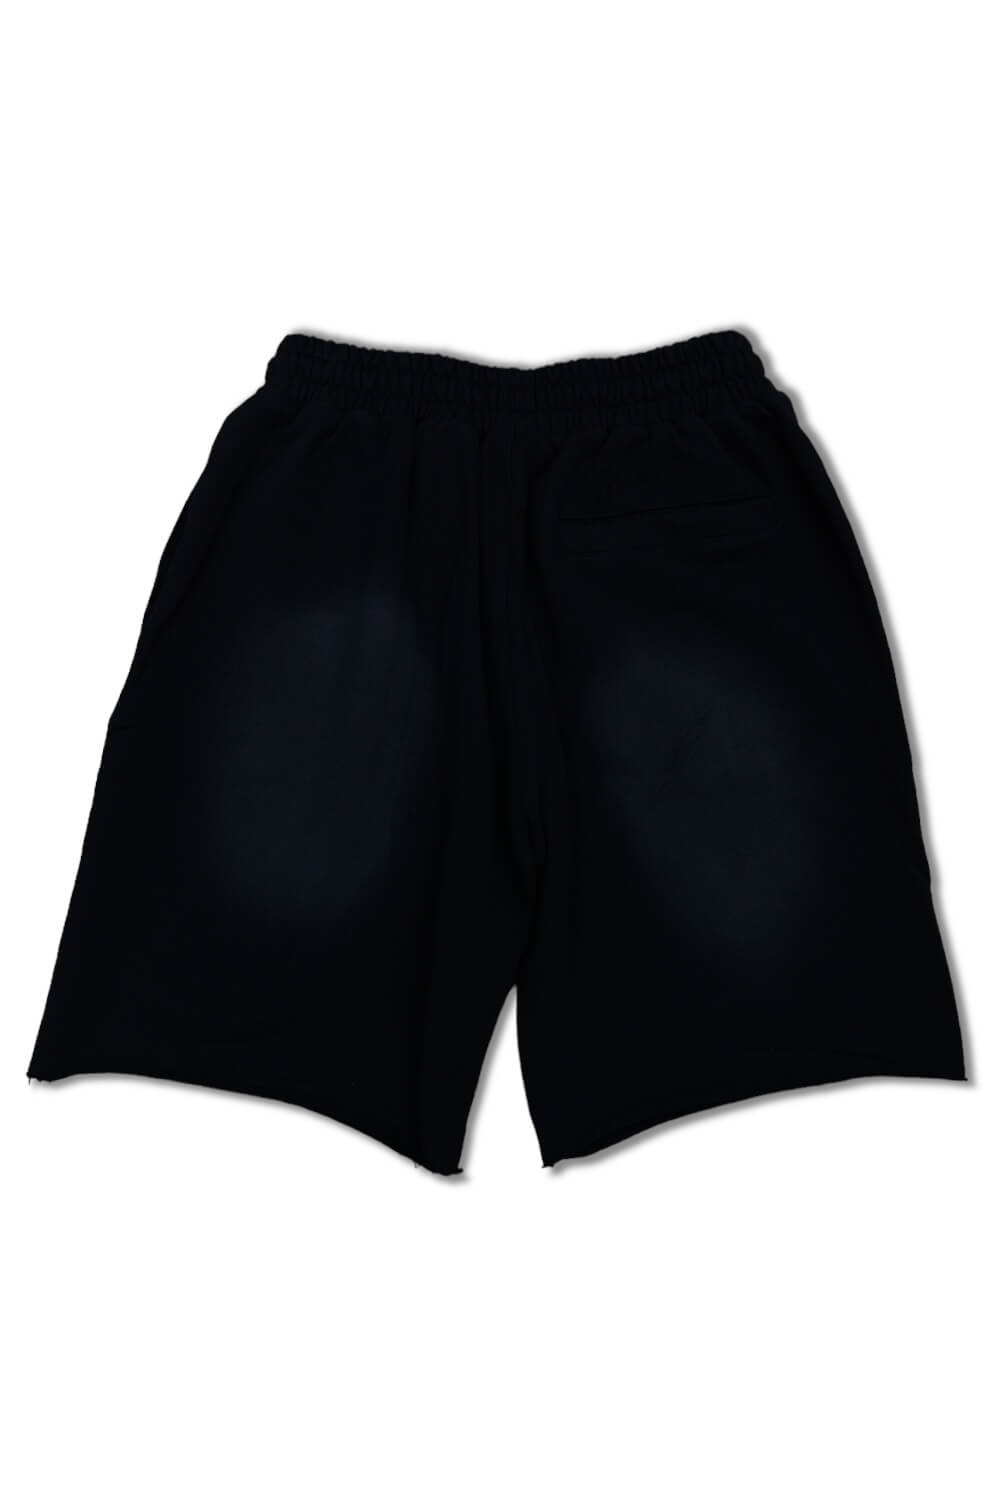 NME Haywood Sweat Shorts -Black